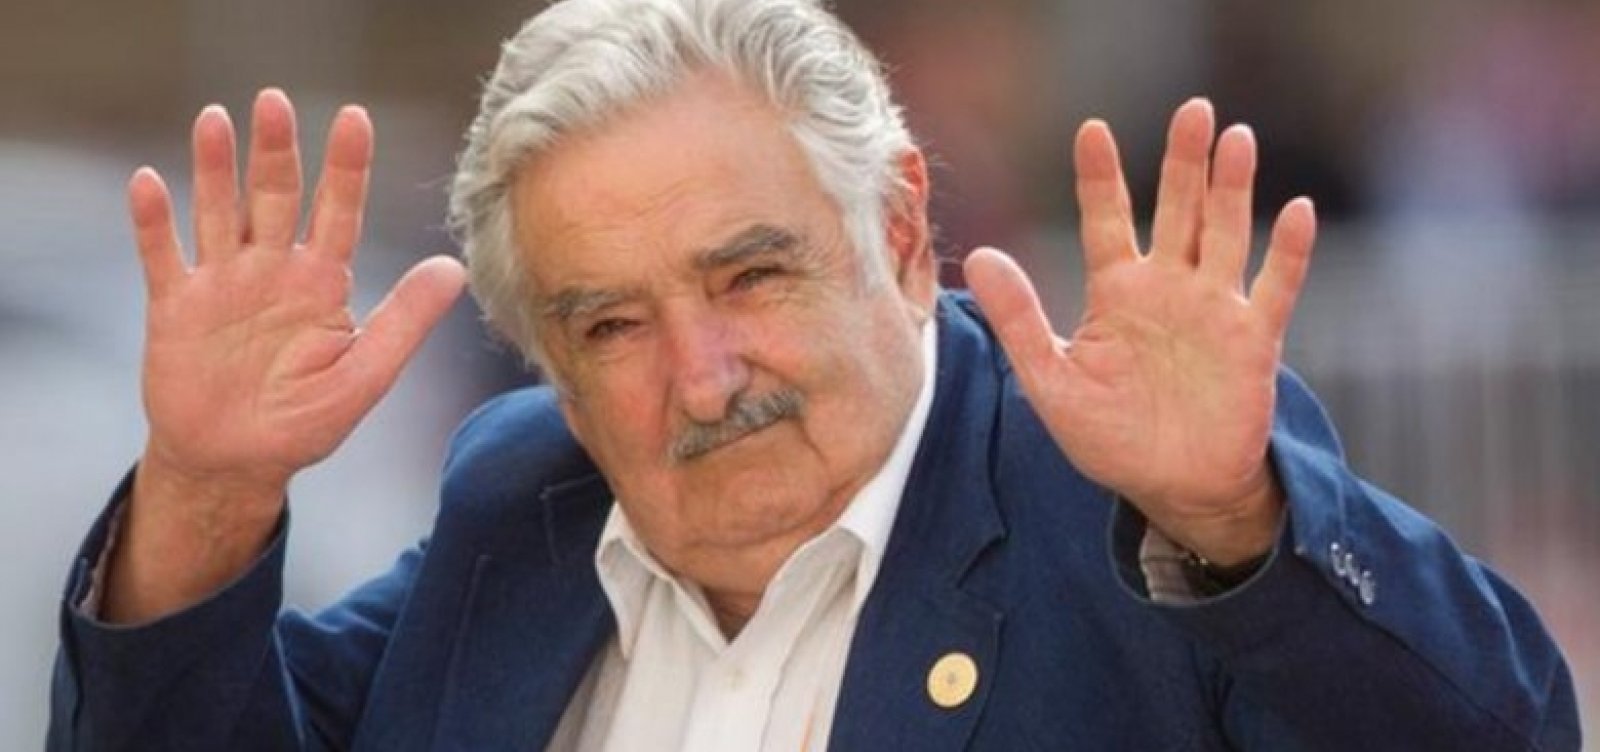 Pepe Mujica, ex-presidente do Uruguai, anuncia saída da política 